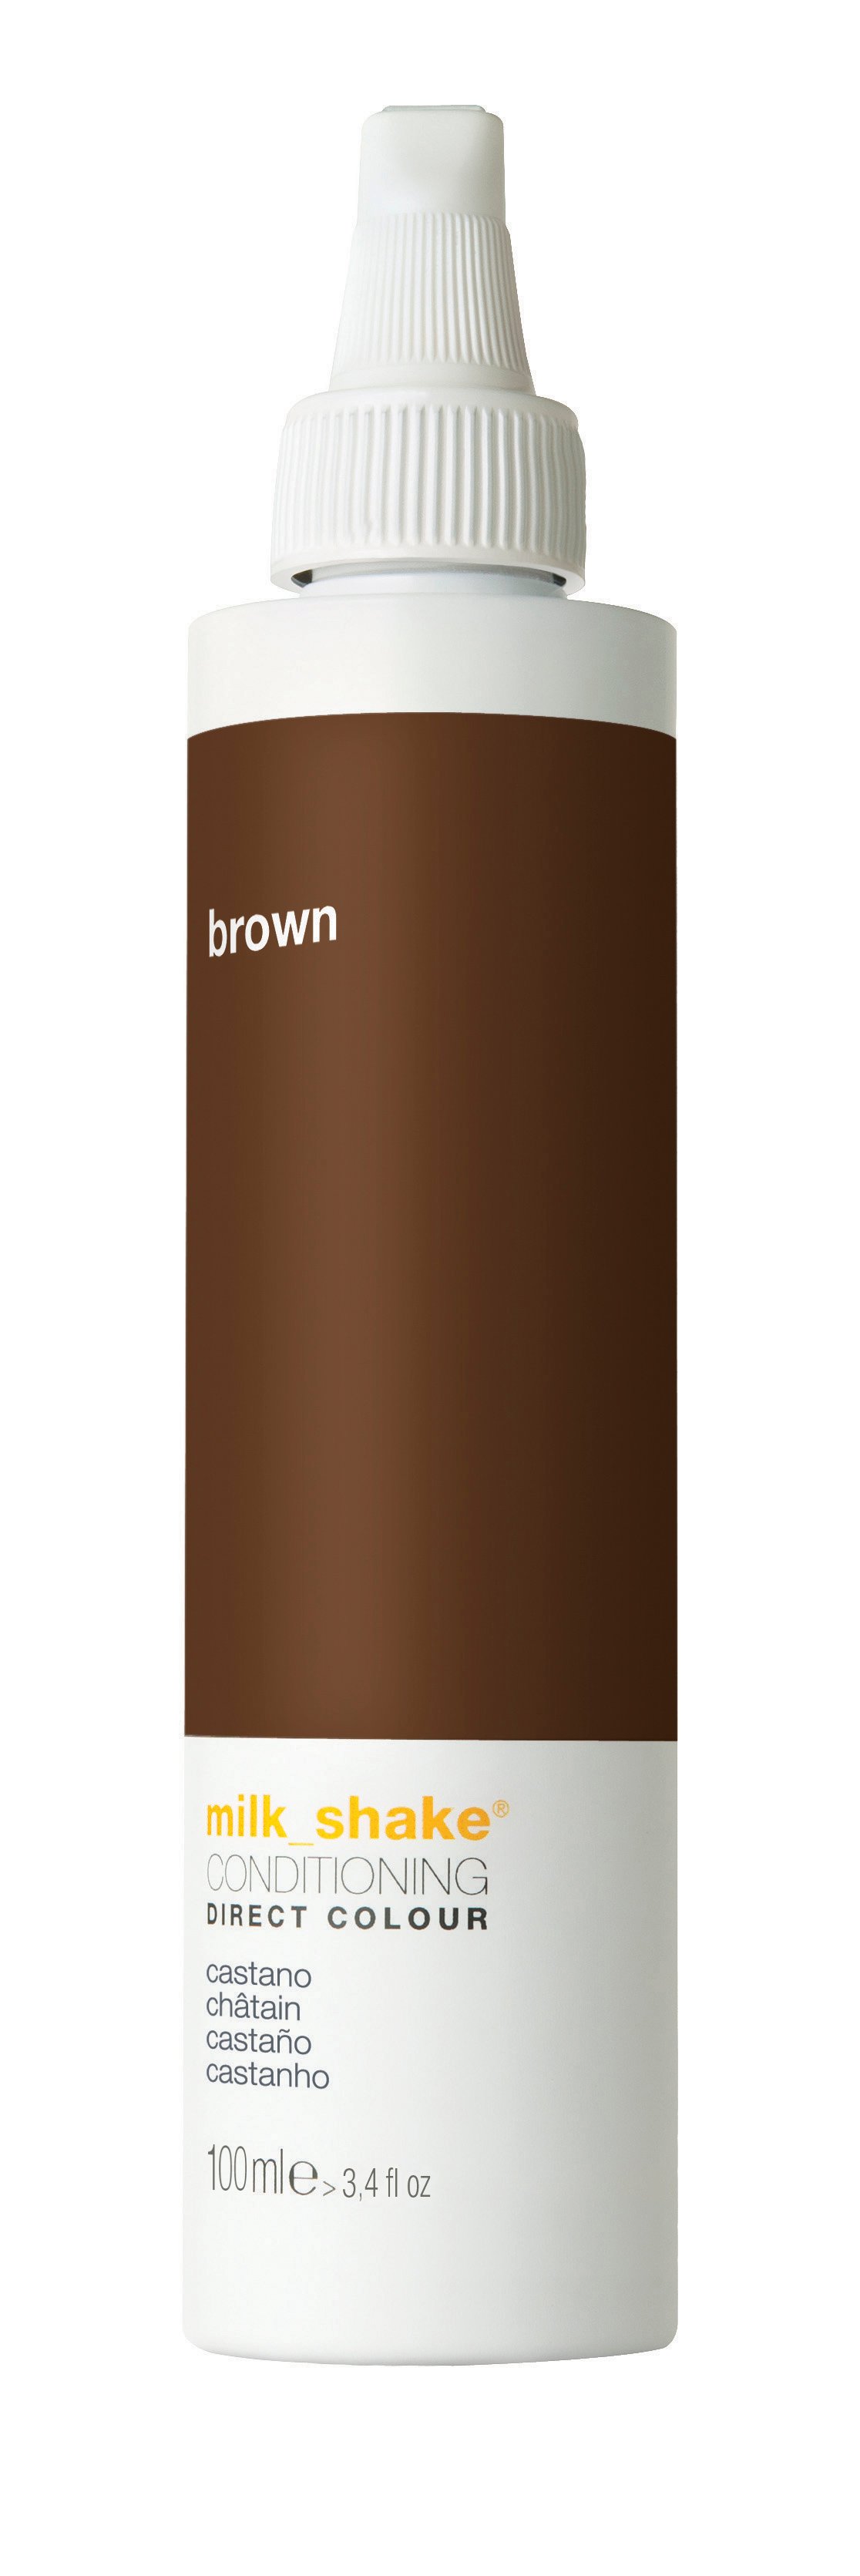 milk_shake - Direct Color 100 ml - Brown - Skjønnhet